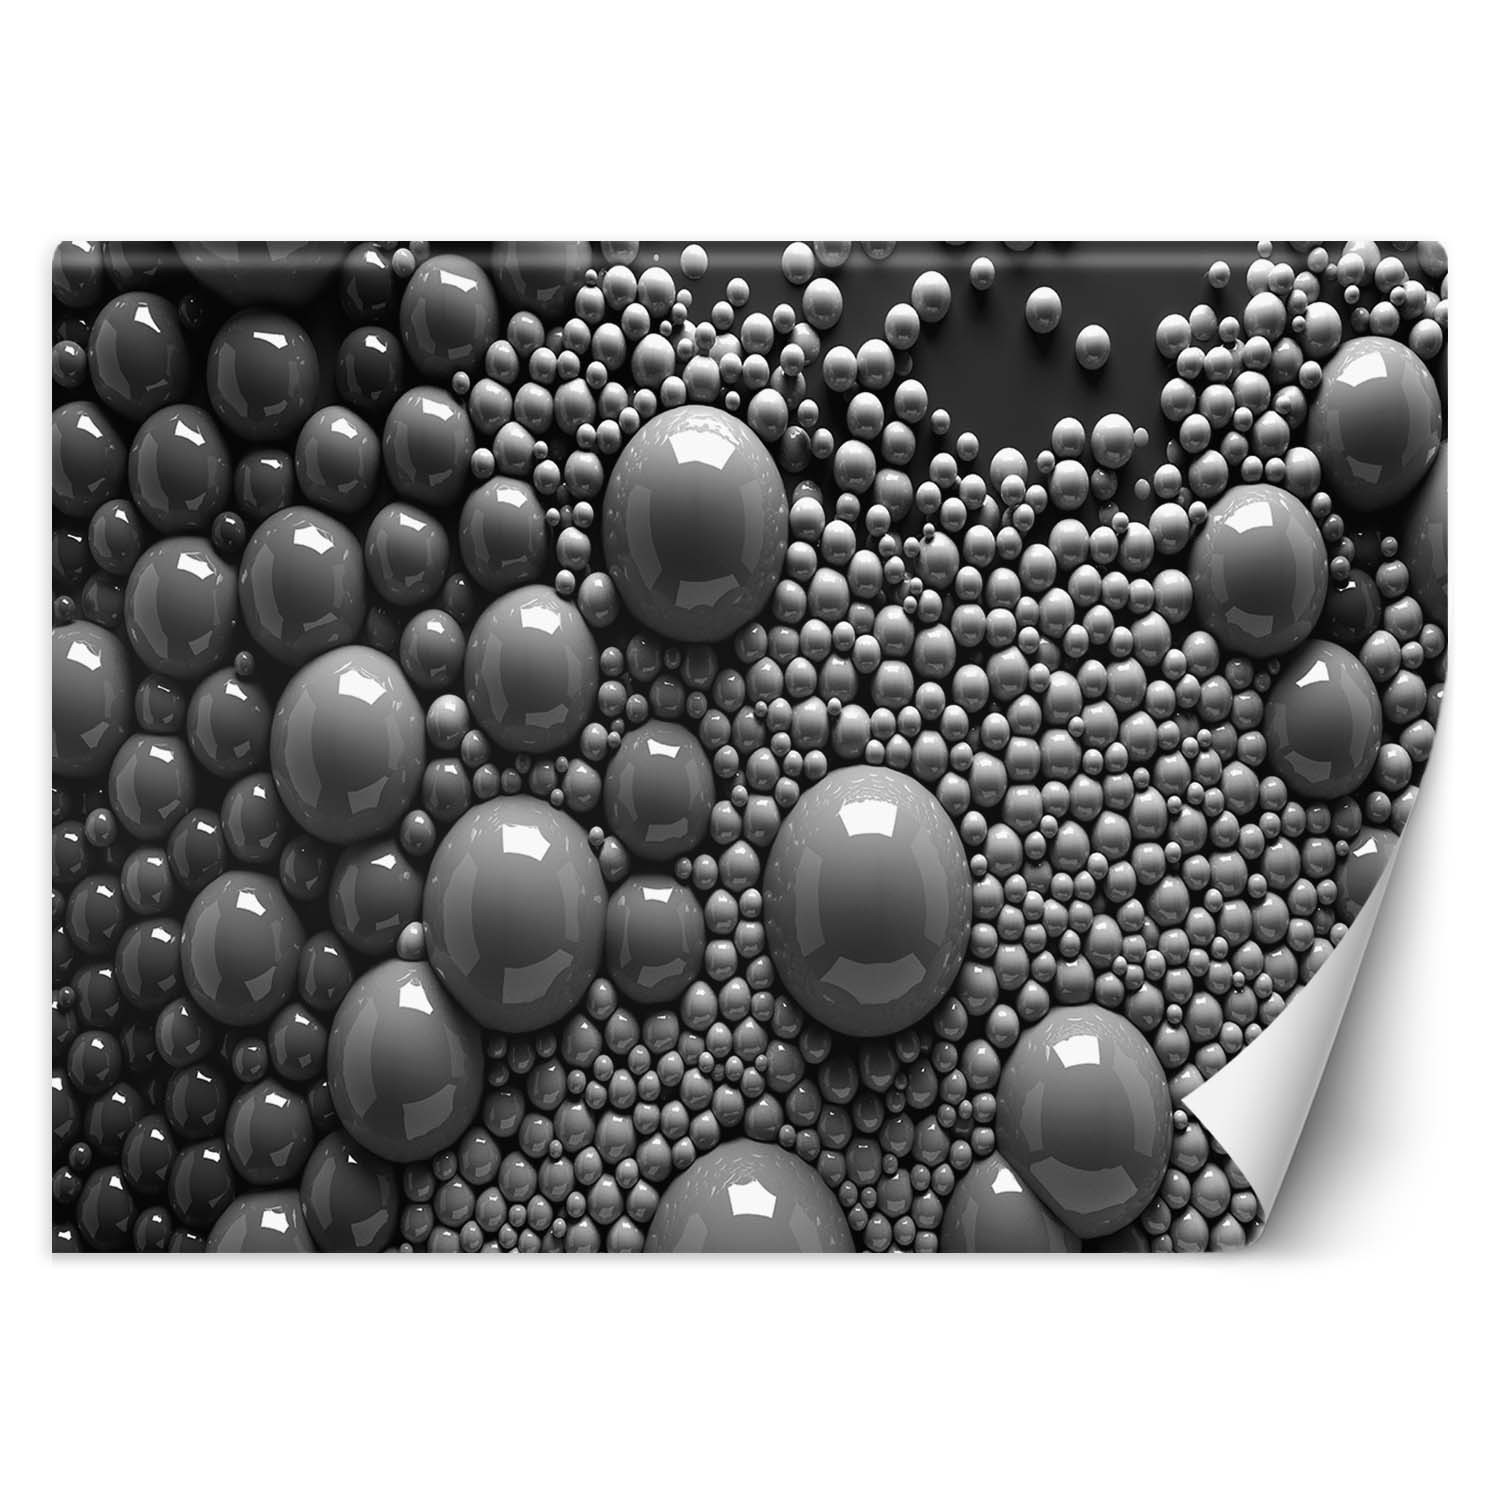 Trend24 – Behang – Abstracte Ballen 3D – Behangpapier – Fotobehang 3D – Behang Woonkamer – 200x140x2 cm – Incl. behanglijm